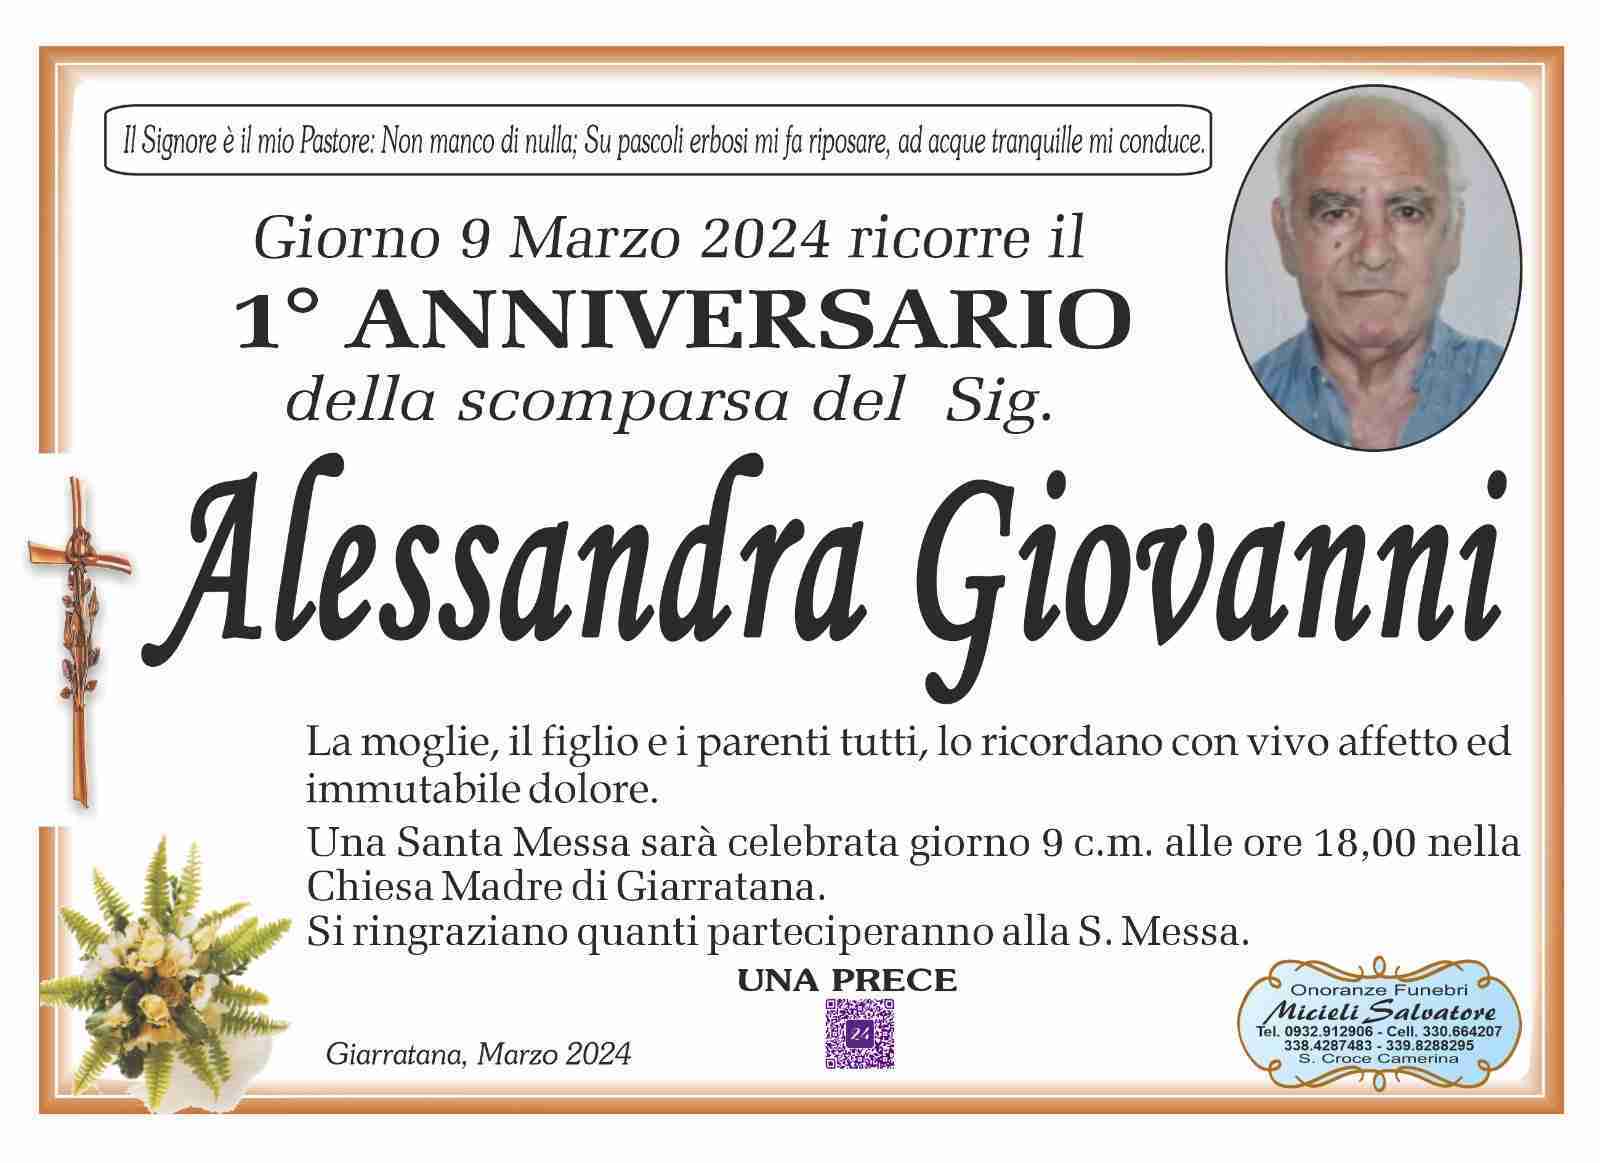 Giovanni Alessandra